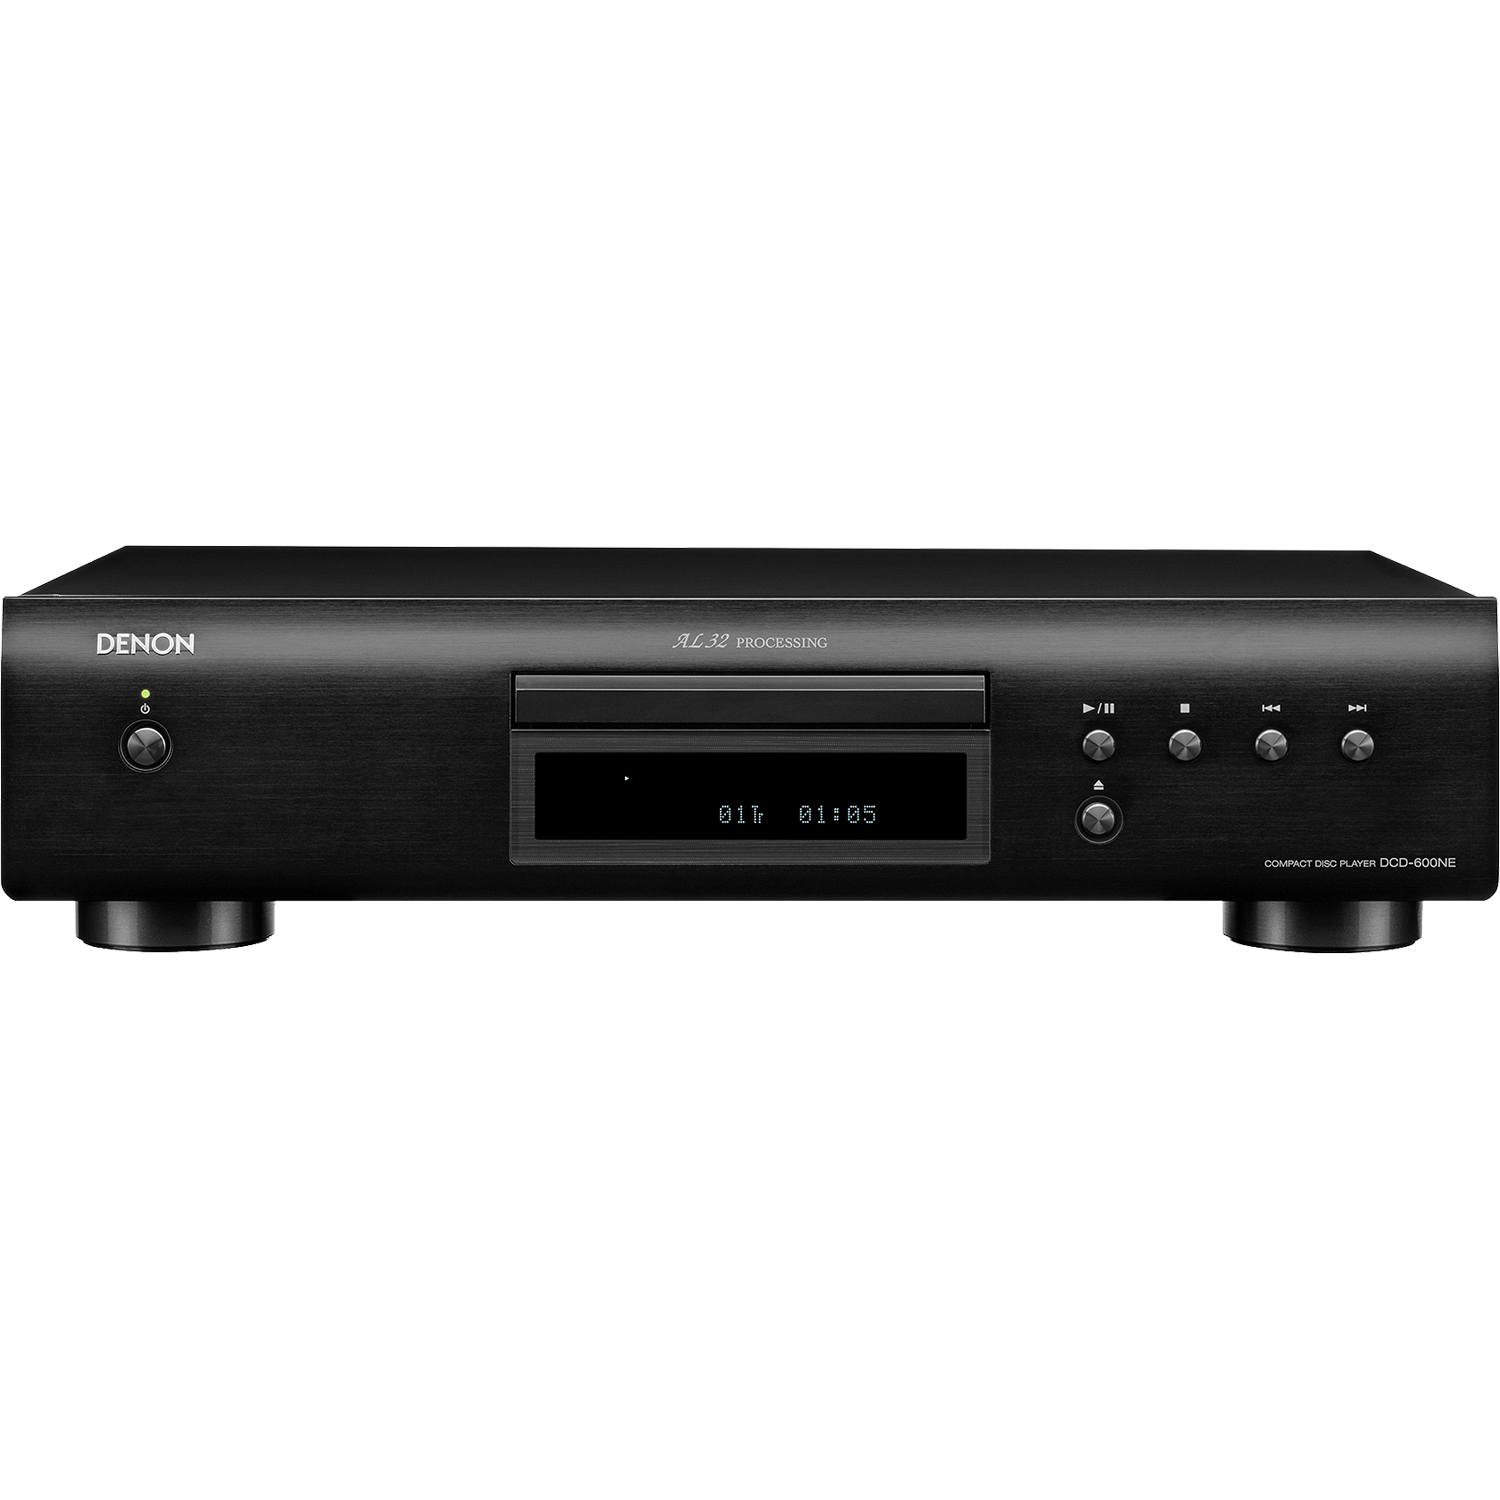 DENON DCD-600NE CD Player with AL32 Processing